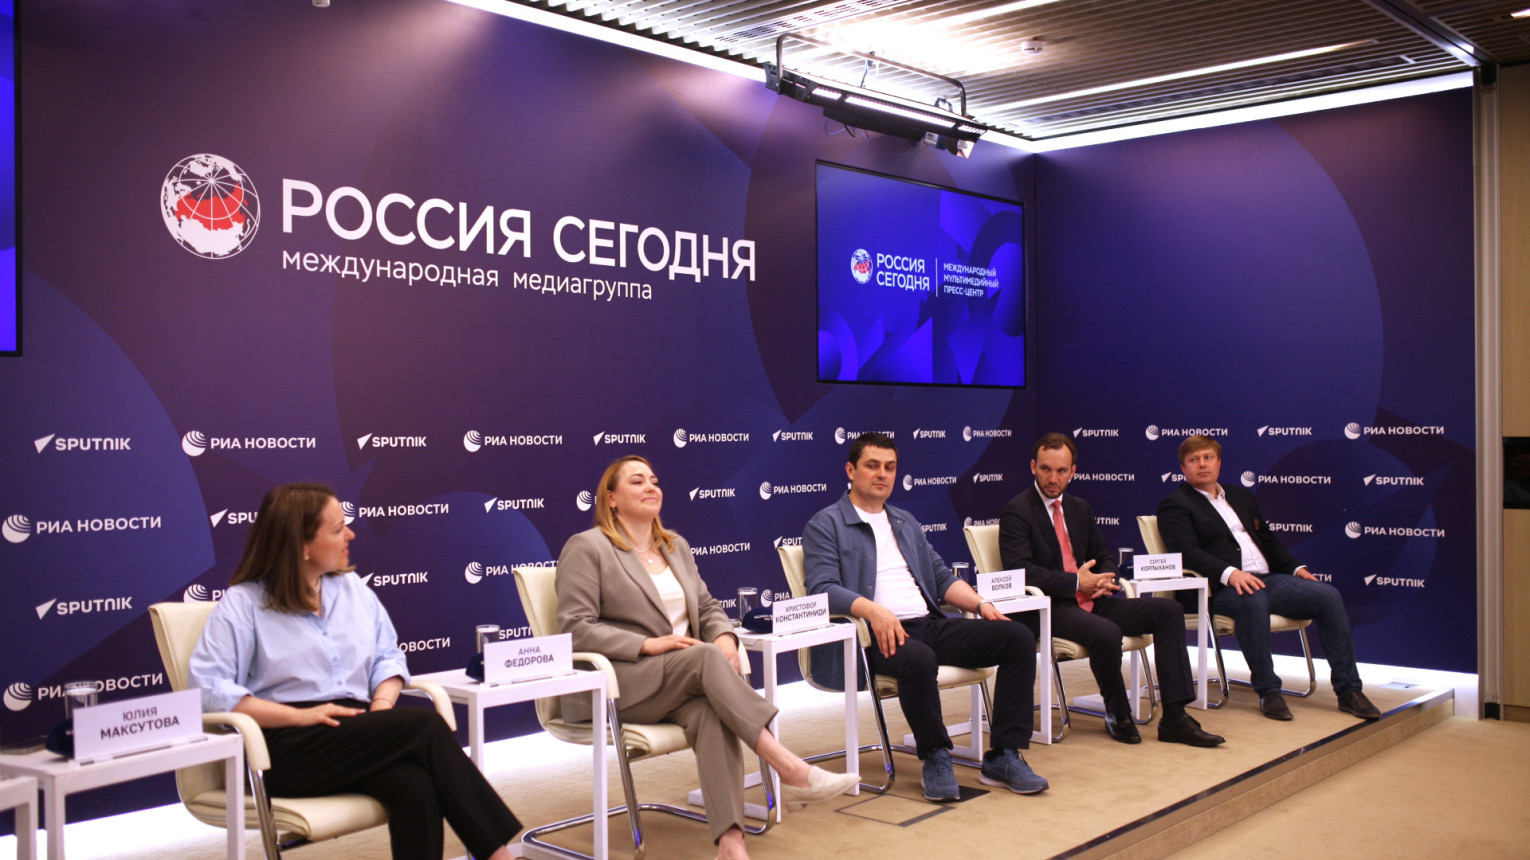 Участники пресс-конференции. Фото: МИА «Россия сегодня»